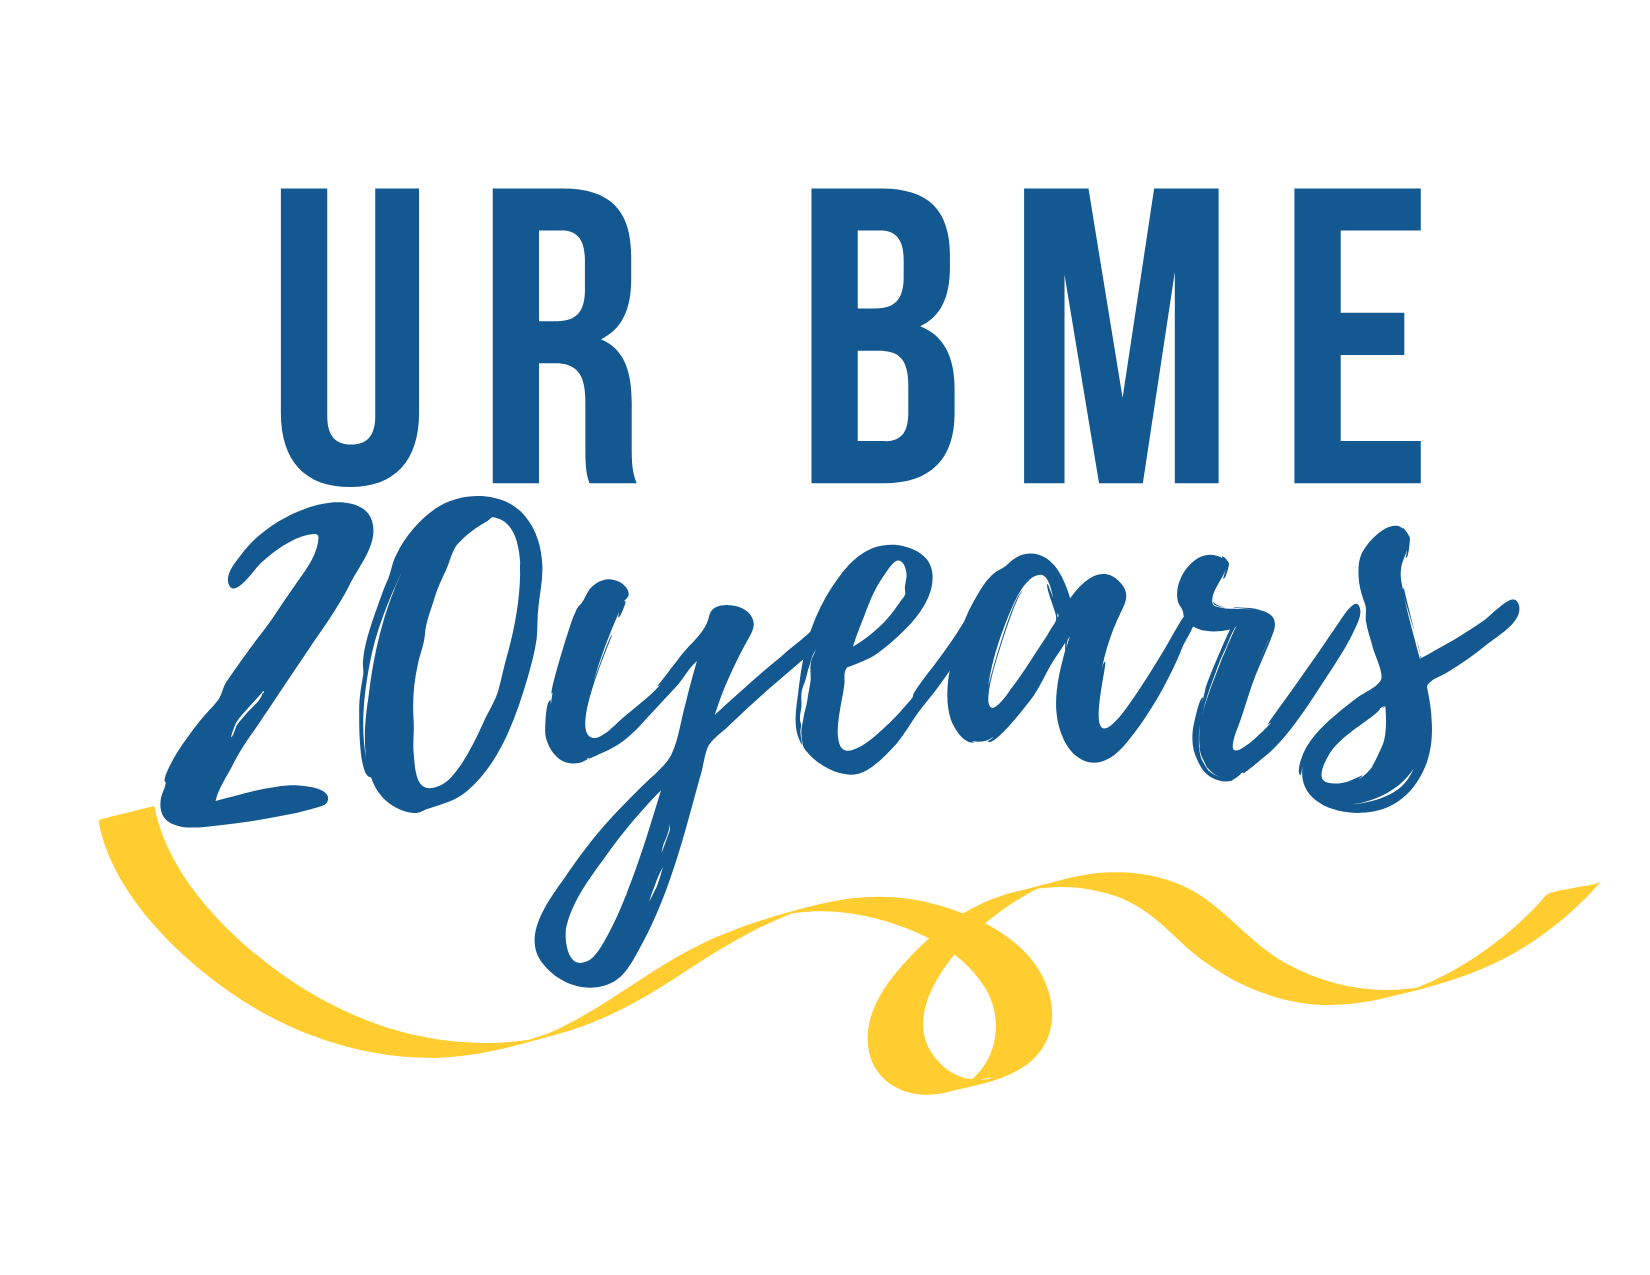 Celebrating 20 years logo.